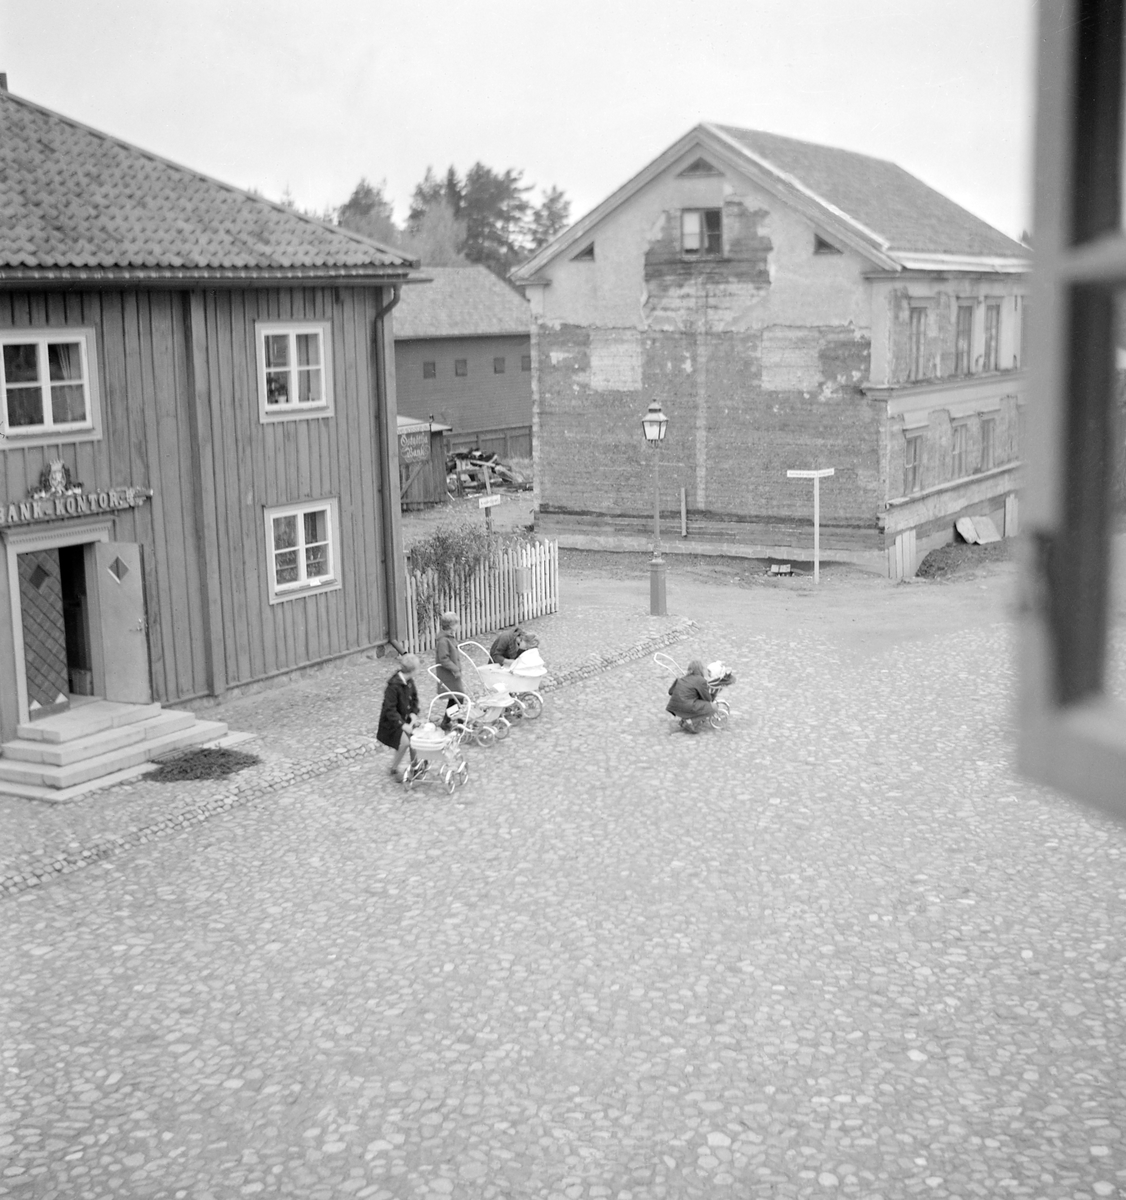 Vy över Kryddbotorget i friluftsmuseet Gamla Linköping. Närmast till vänster ligger det så kallade Landshövdingehuset, uppkallat efter att byggnaden en tid fungerade som bostad för länets ståthållare. Från 1954 är huset placerat i rådande läge och inrymmer ett bankmuseum. I fonden ses Sundströmska gården som vid tiden nyligen flyttats från Nygatan 52 för att i Gamla Linköping fungera som bostad.